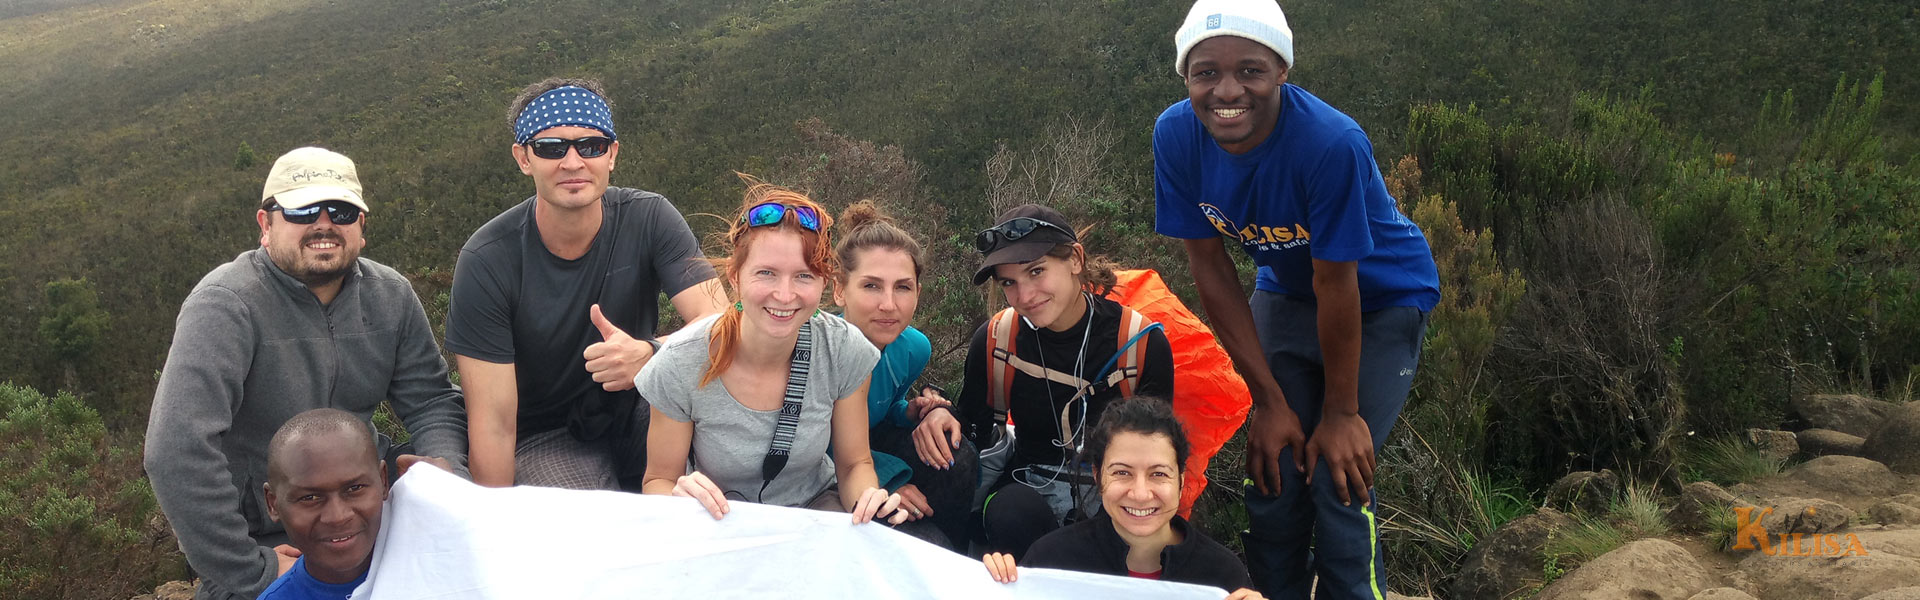 Mount Kilimanjaro Day Hiking